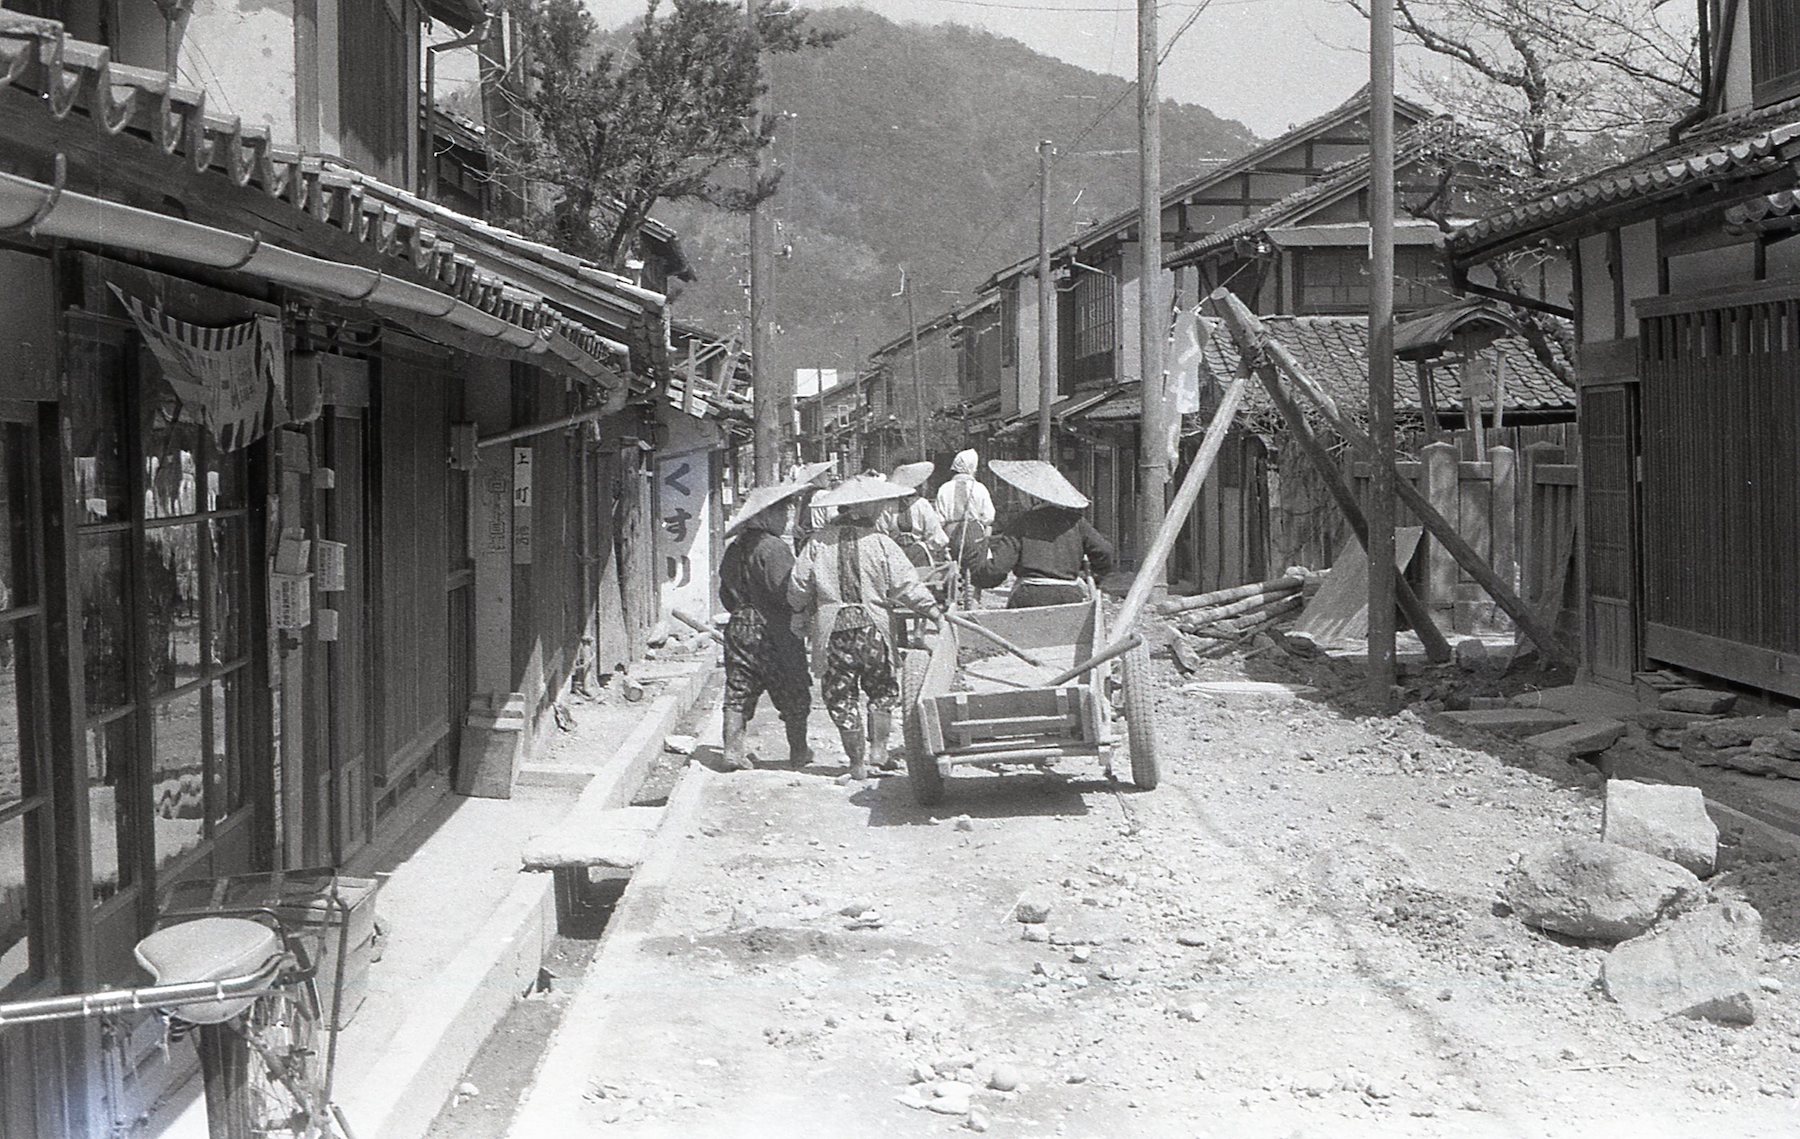 上町の道路舗装工事's image 1